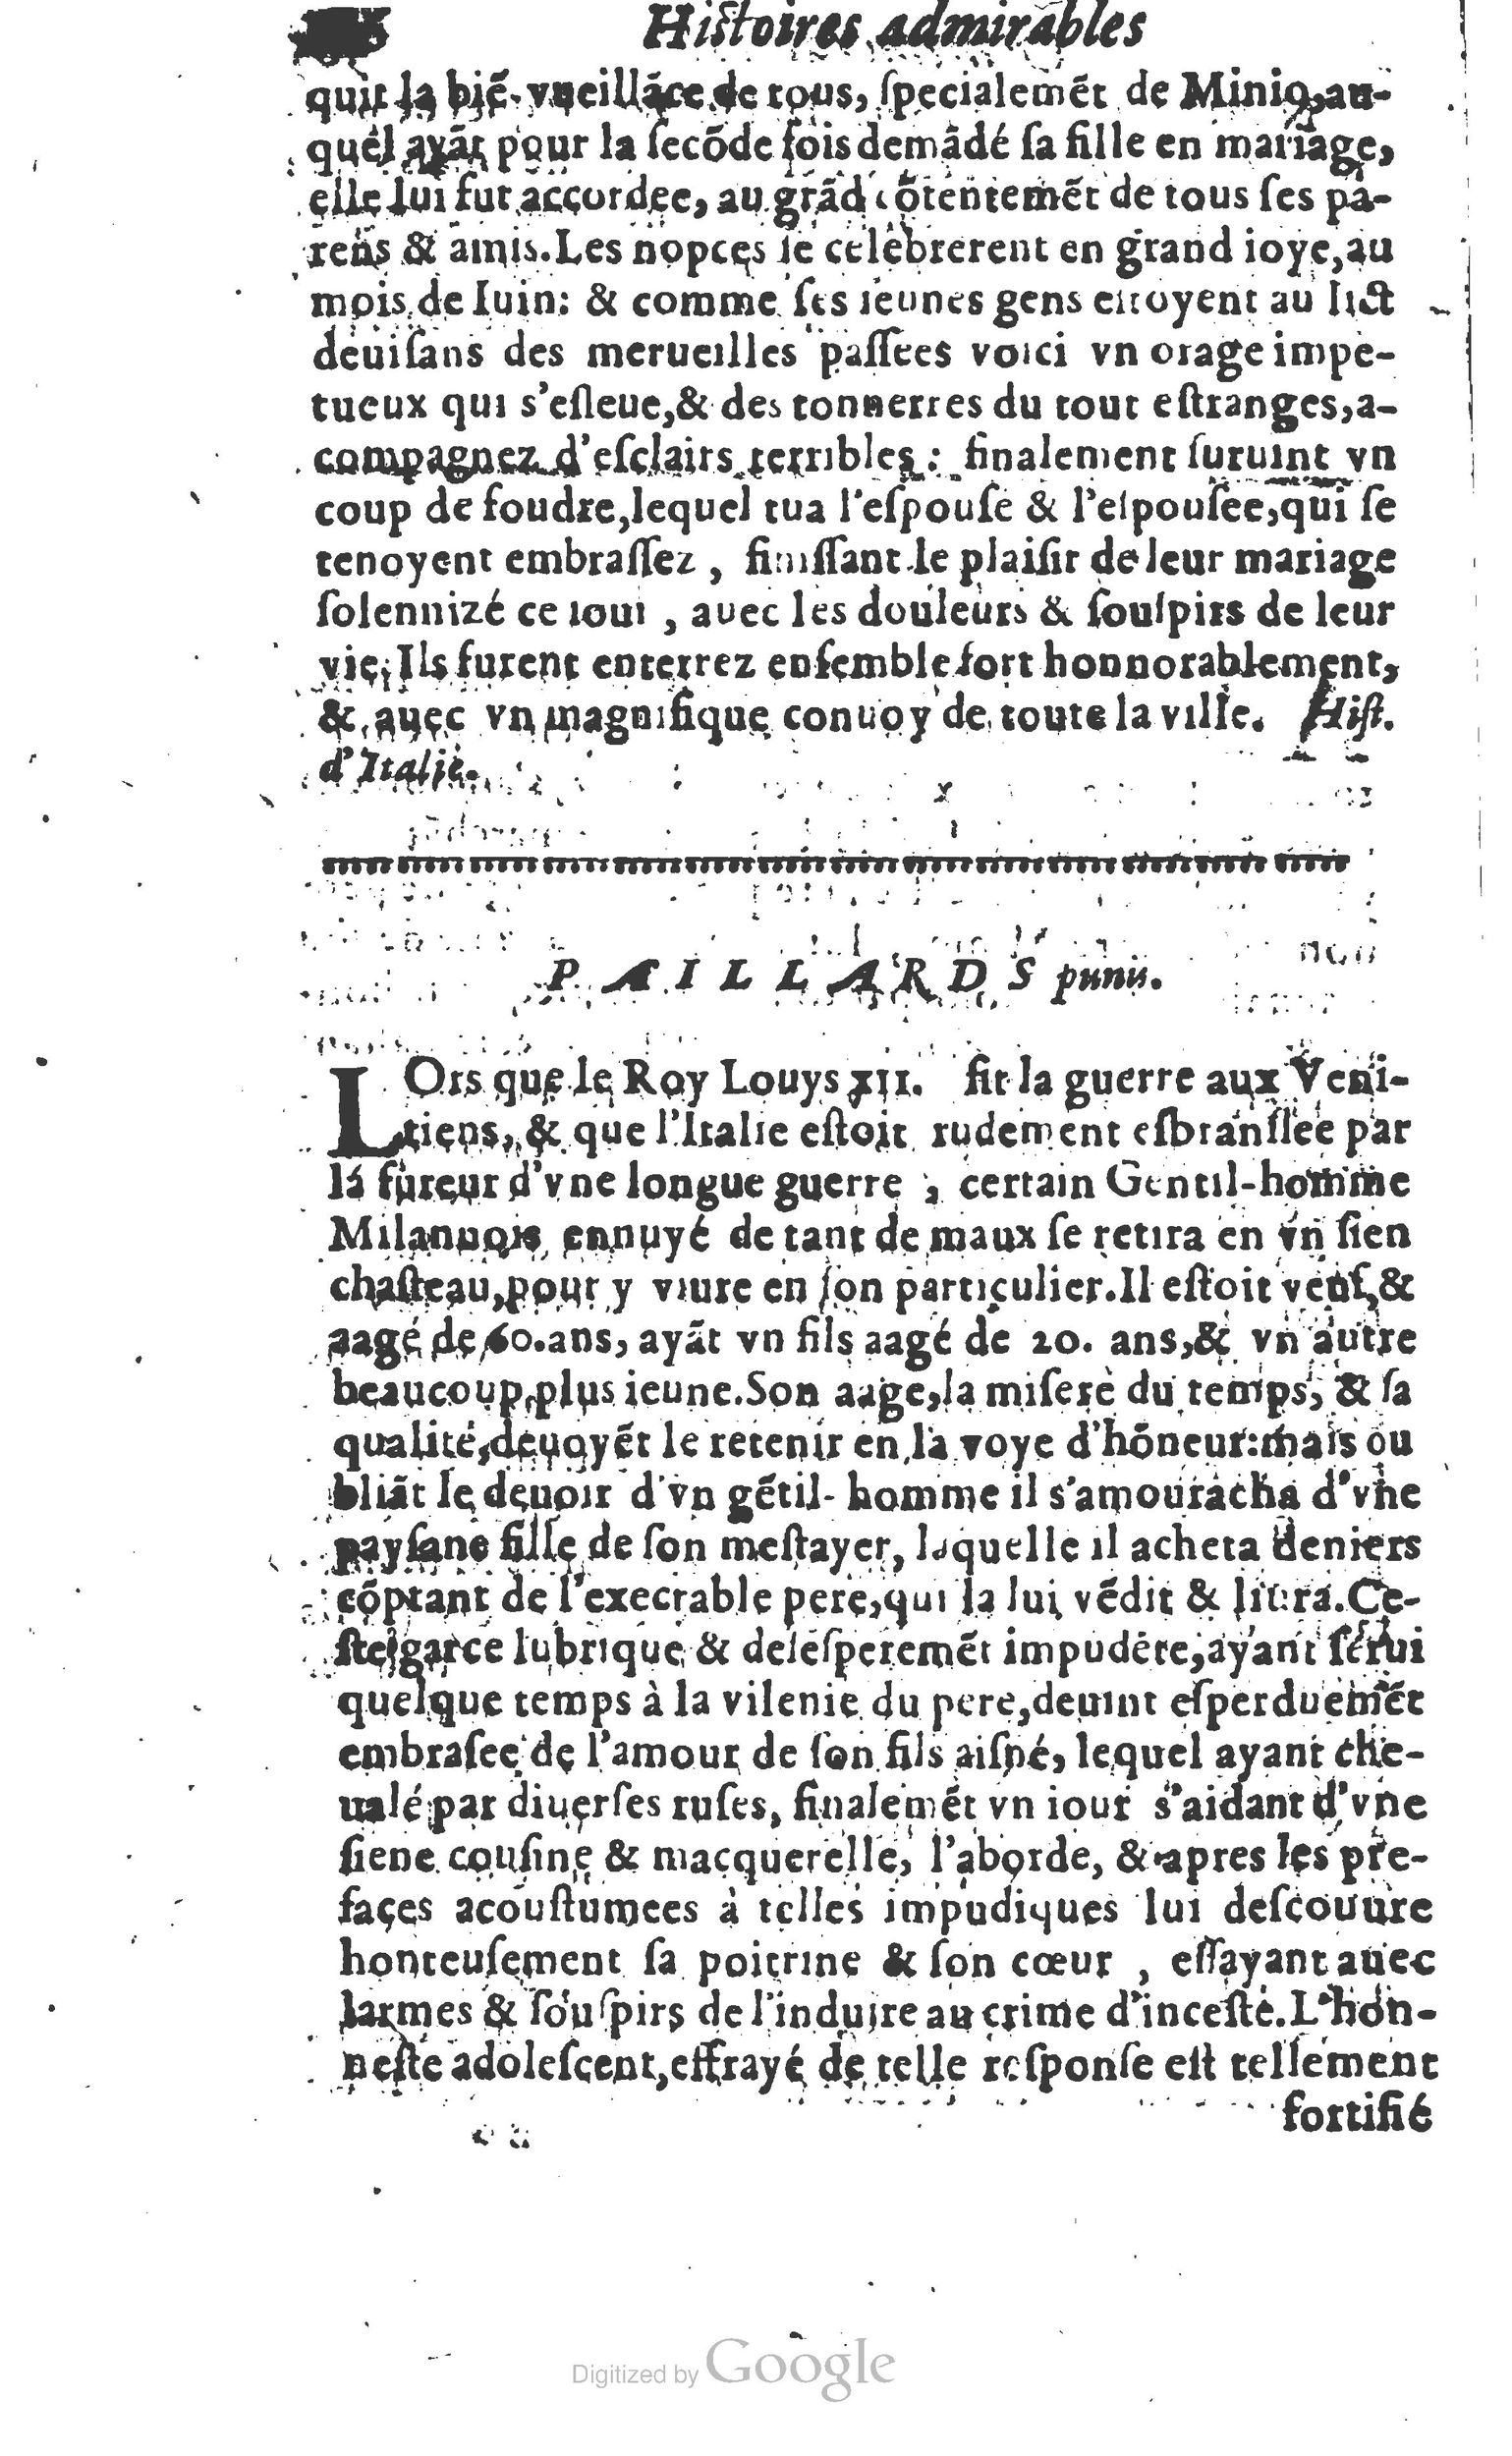 1610 Trésor d’histoires admirables et mémorables de nostre temps Marceau Princeton_Page_0407.jpg